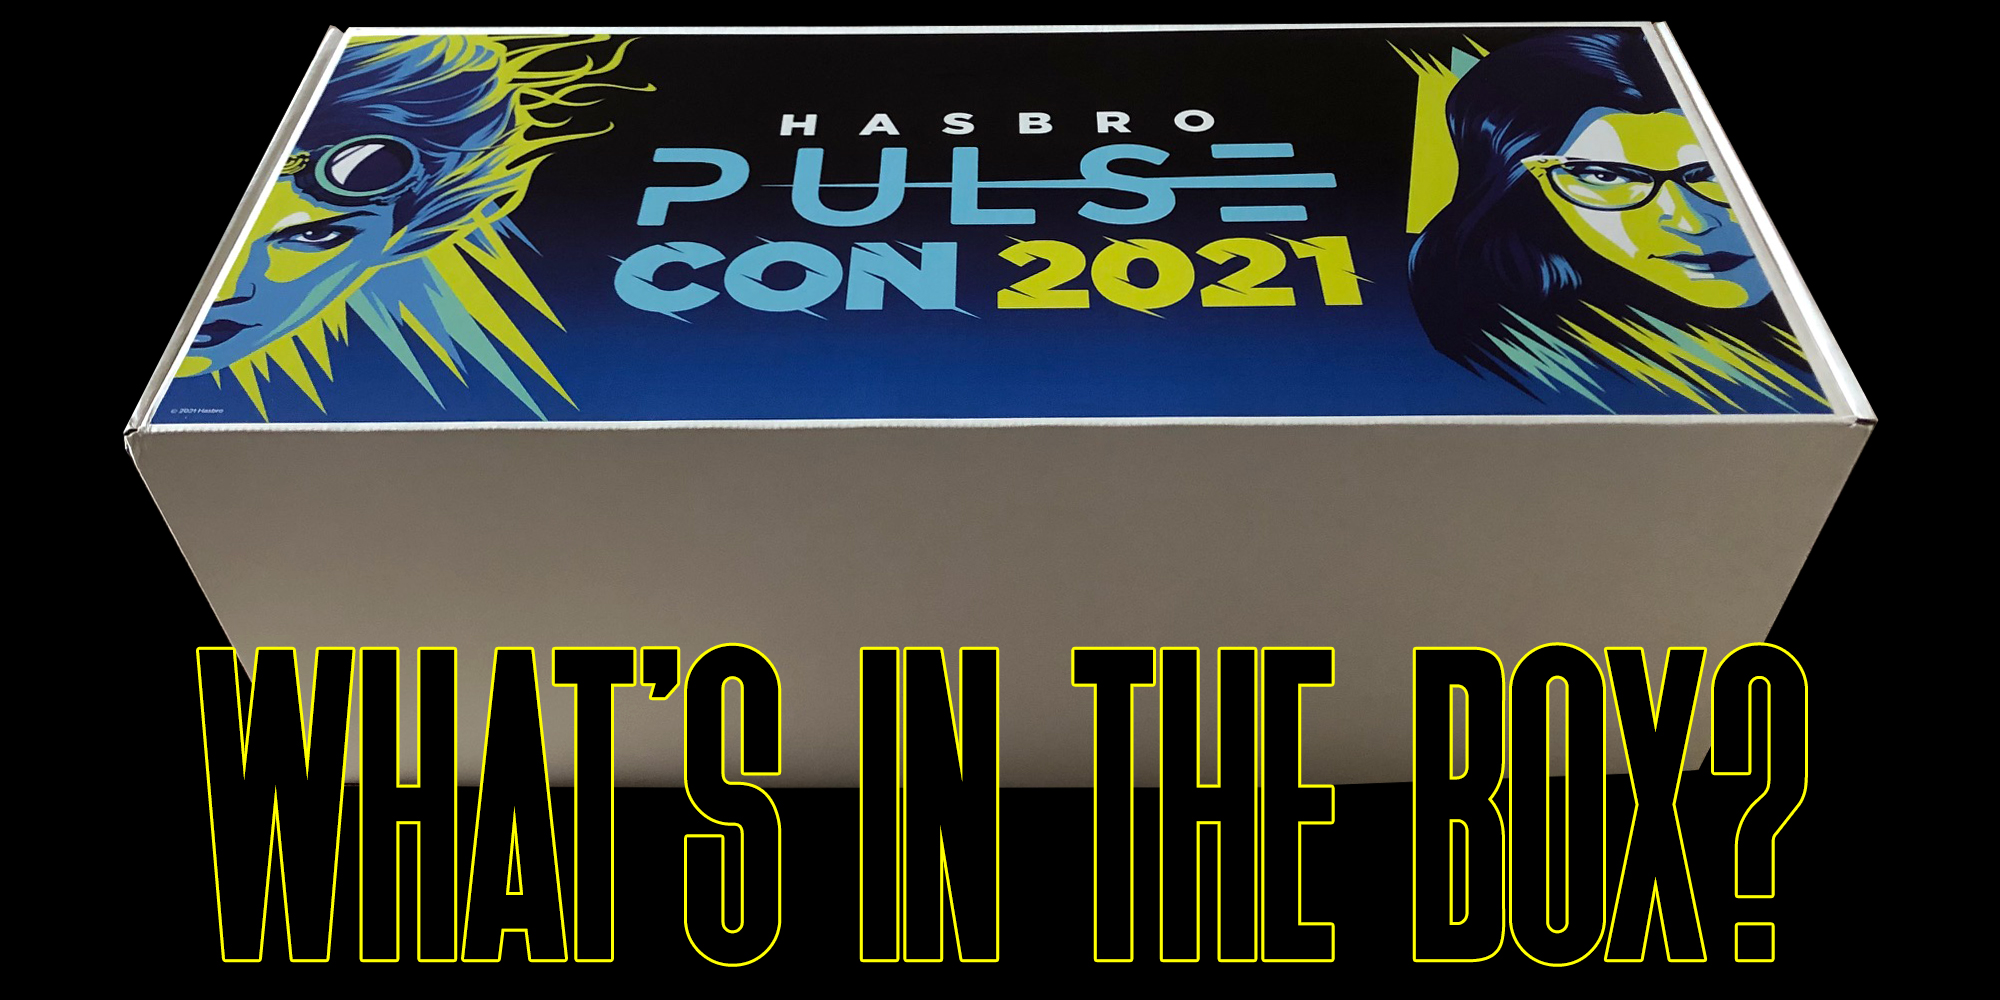 Hasbro Pulse Con 2021 Promo Box